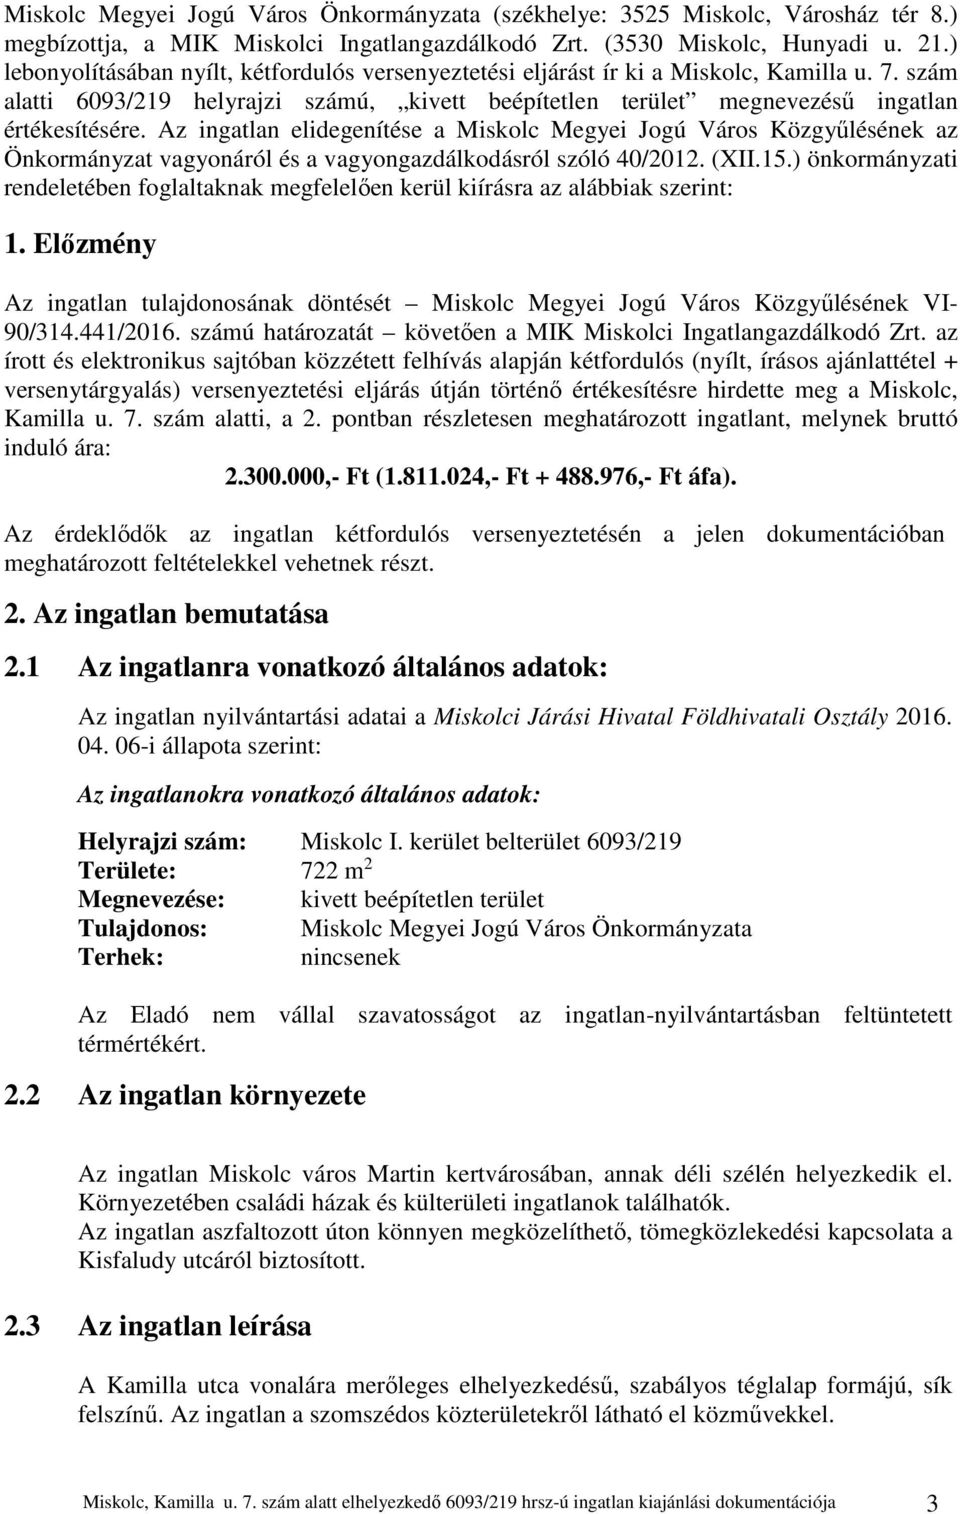 Az ingatlan elidegenítése a Miskolc Megyei Jogú Város Közgyűlésének az Önkormányzat vagyonáról és a vagyongazdálkodásról szóló 40/2012. (XII.15.